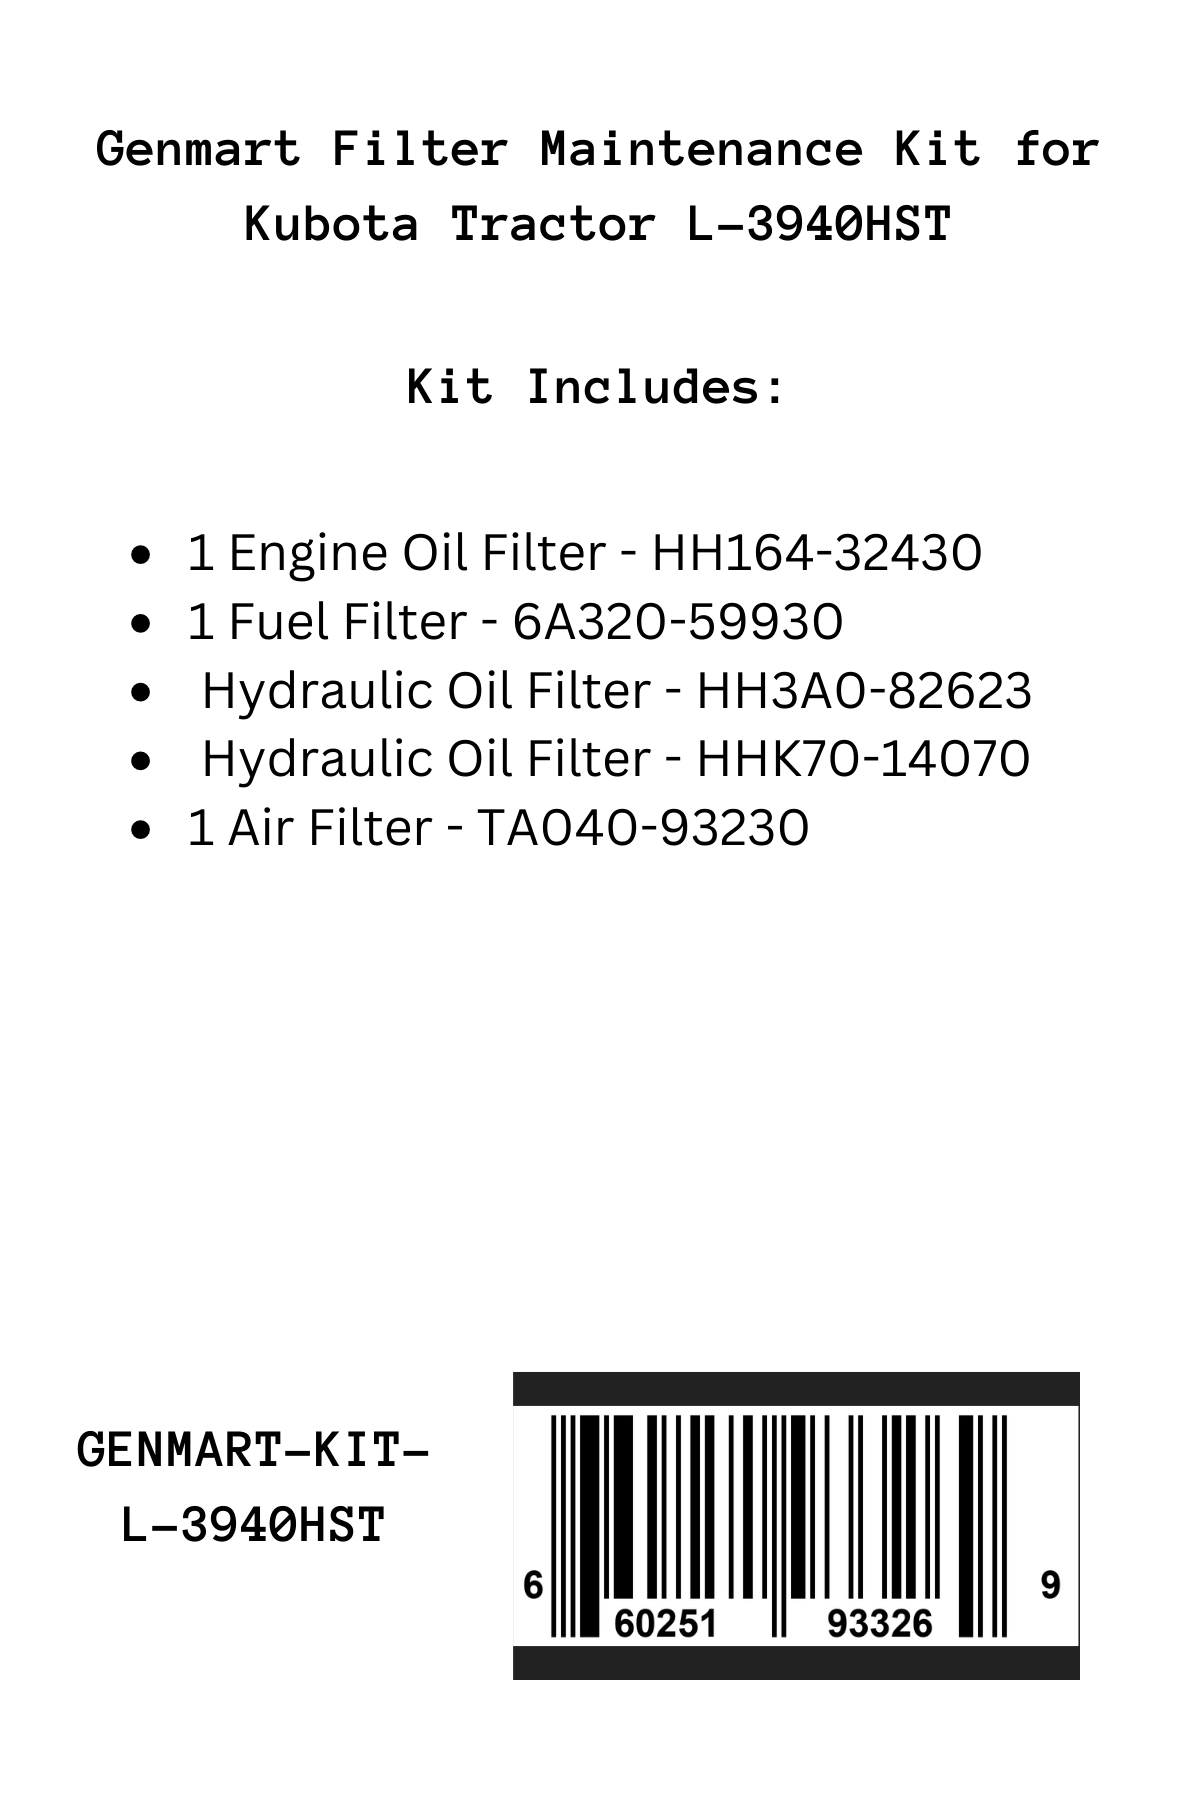 Genmart Maintenance Kit for Kubota Tractor L-3940HST